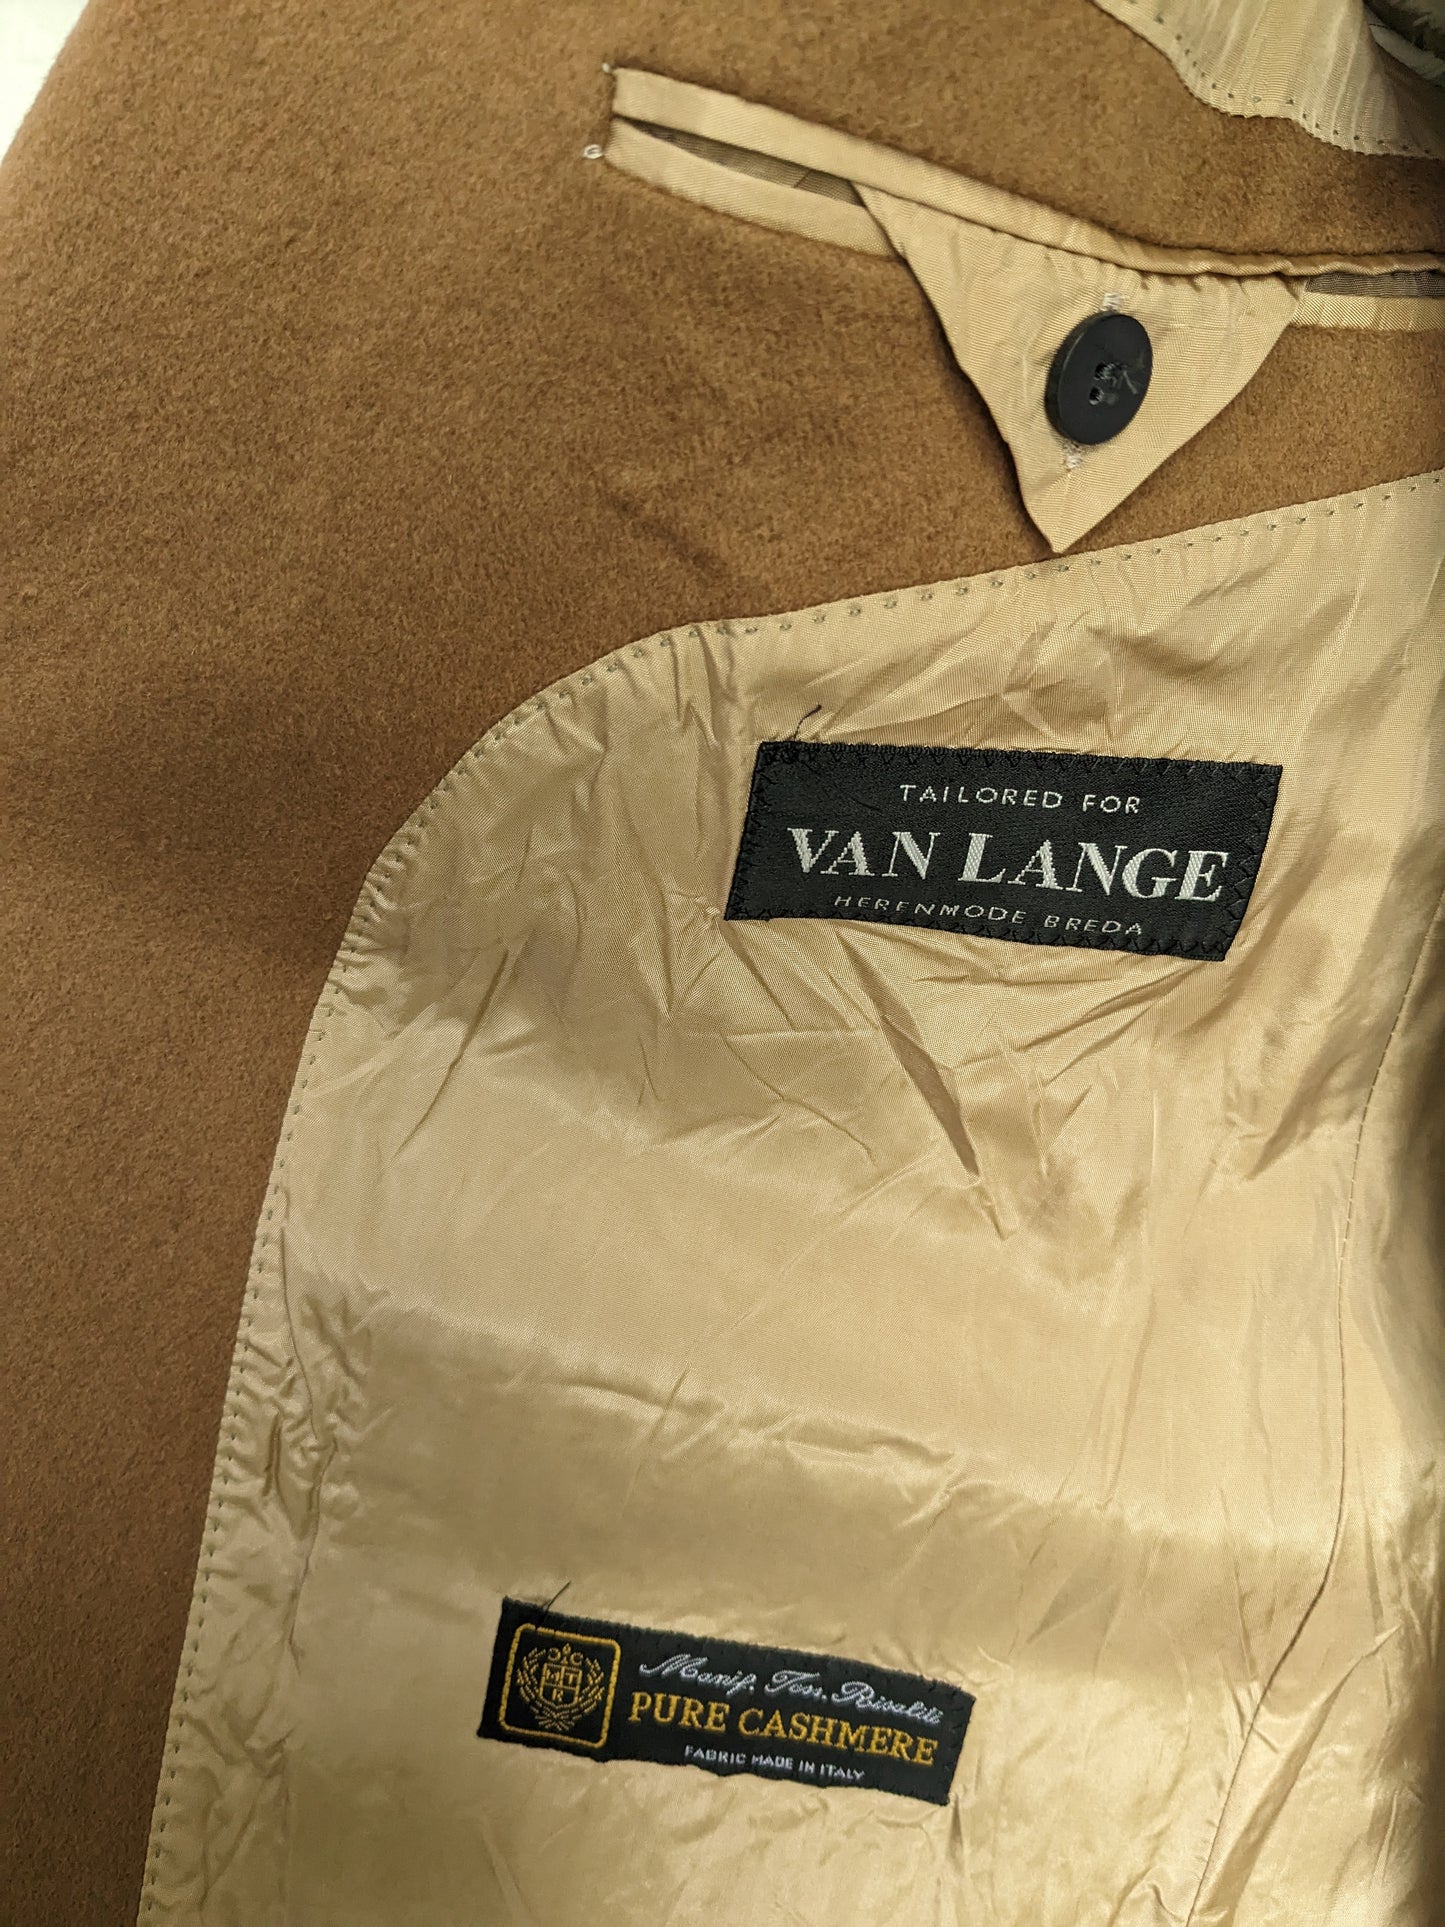 B keus: Cashmere Colbert. Tailored for Van Lange. Bruin gekleurd. Maat 26 (52 / L) beschadiging mouw.